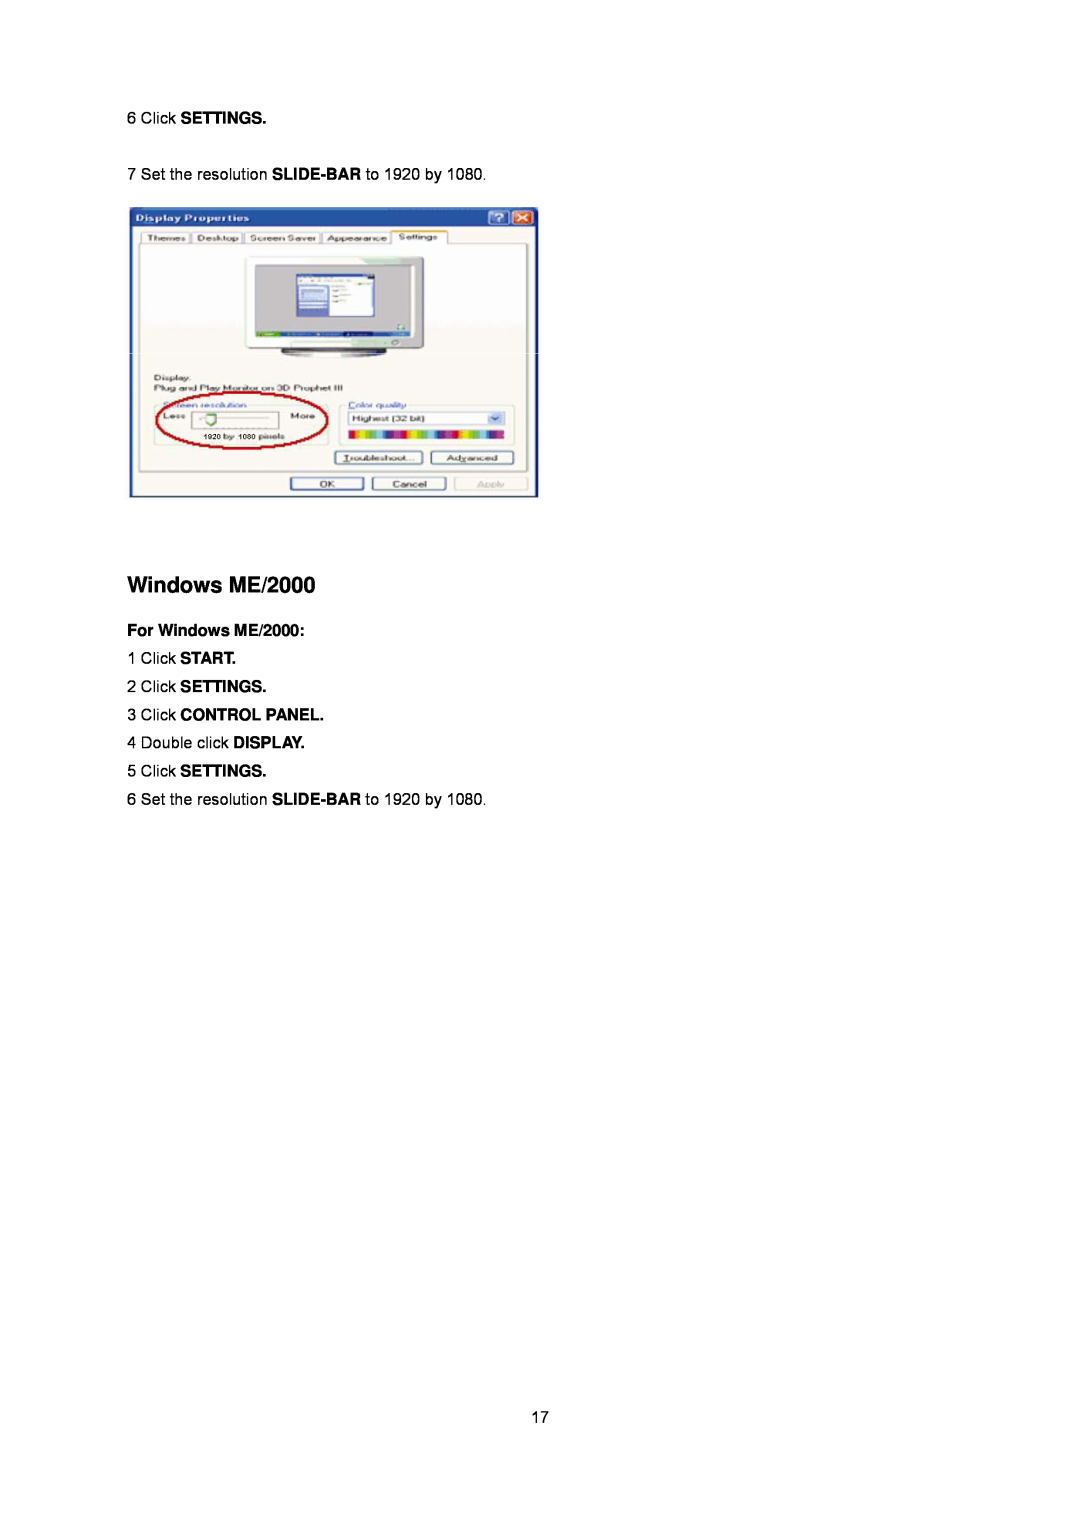 AOC E2243FWK, E2243FWU manual For Windows ME/2000, Click SETTINGS 3 Click CONTROL PANEL 